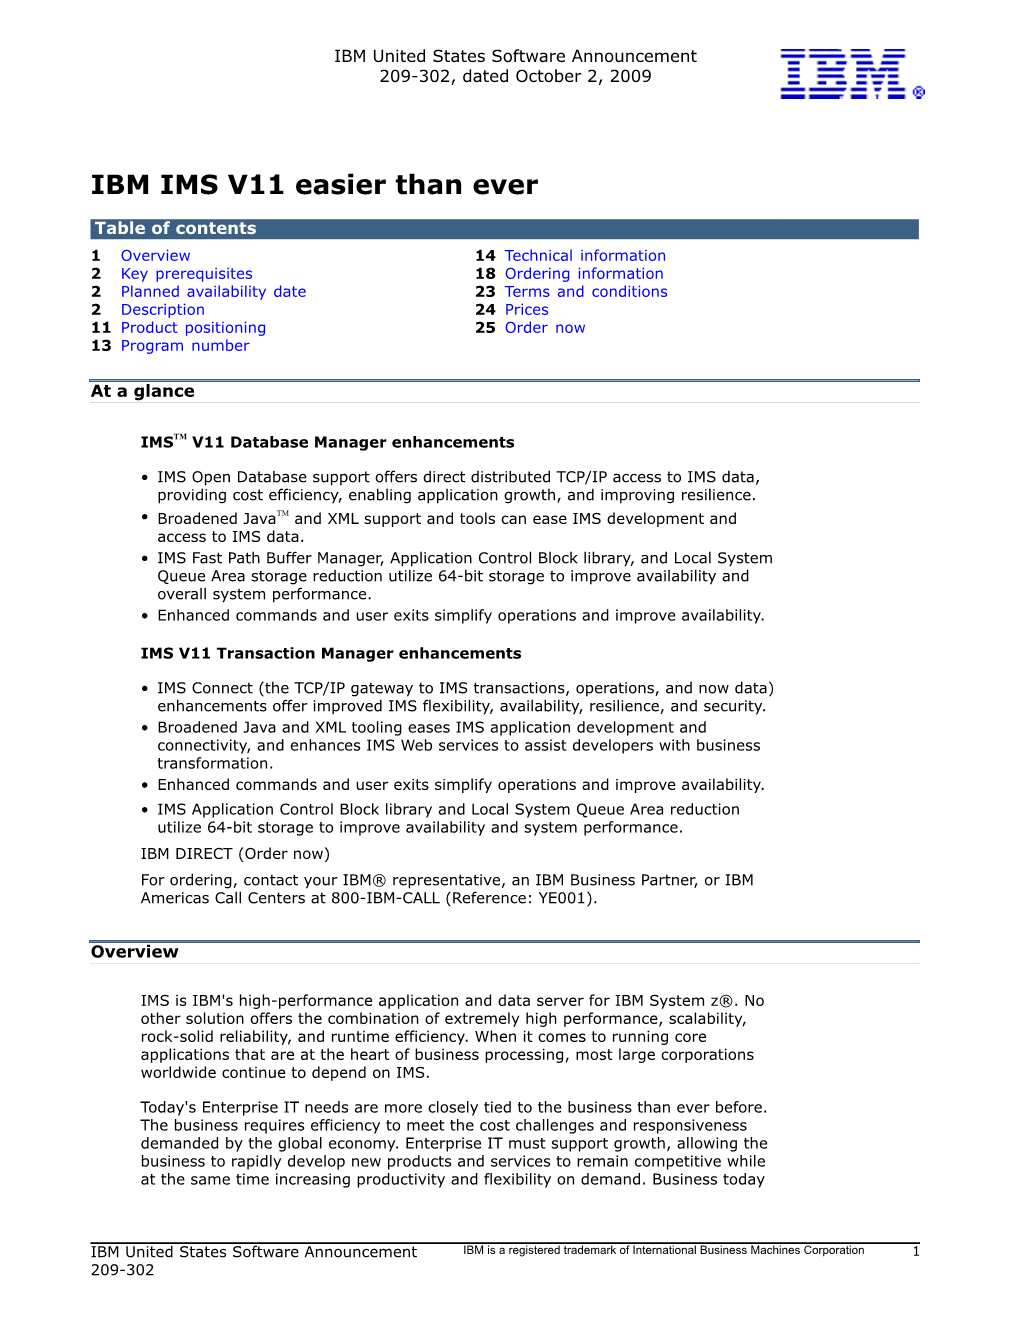 IBM IMS V11 Easier Than Ever